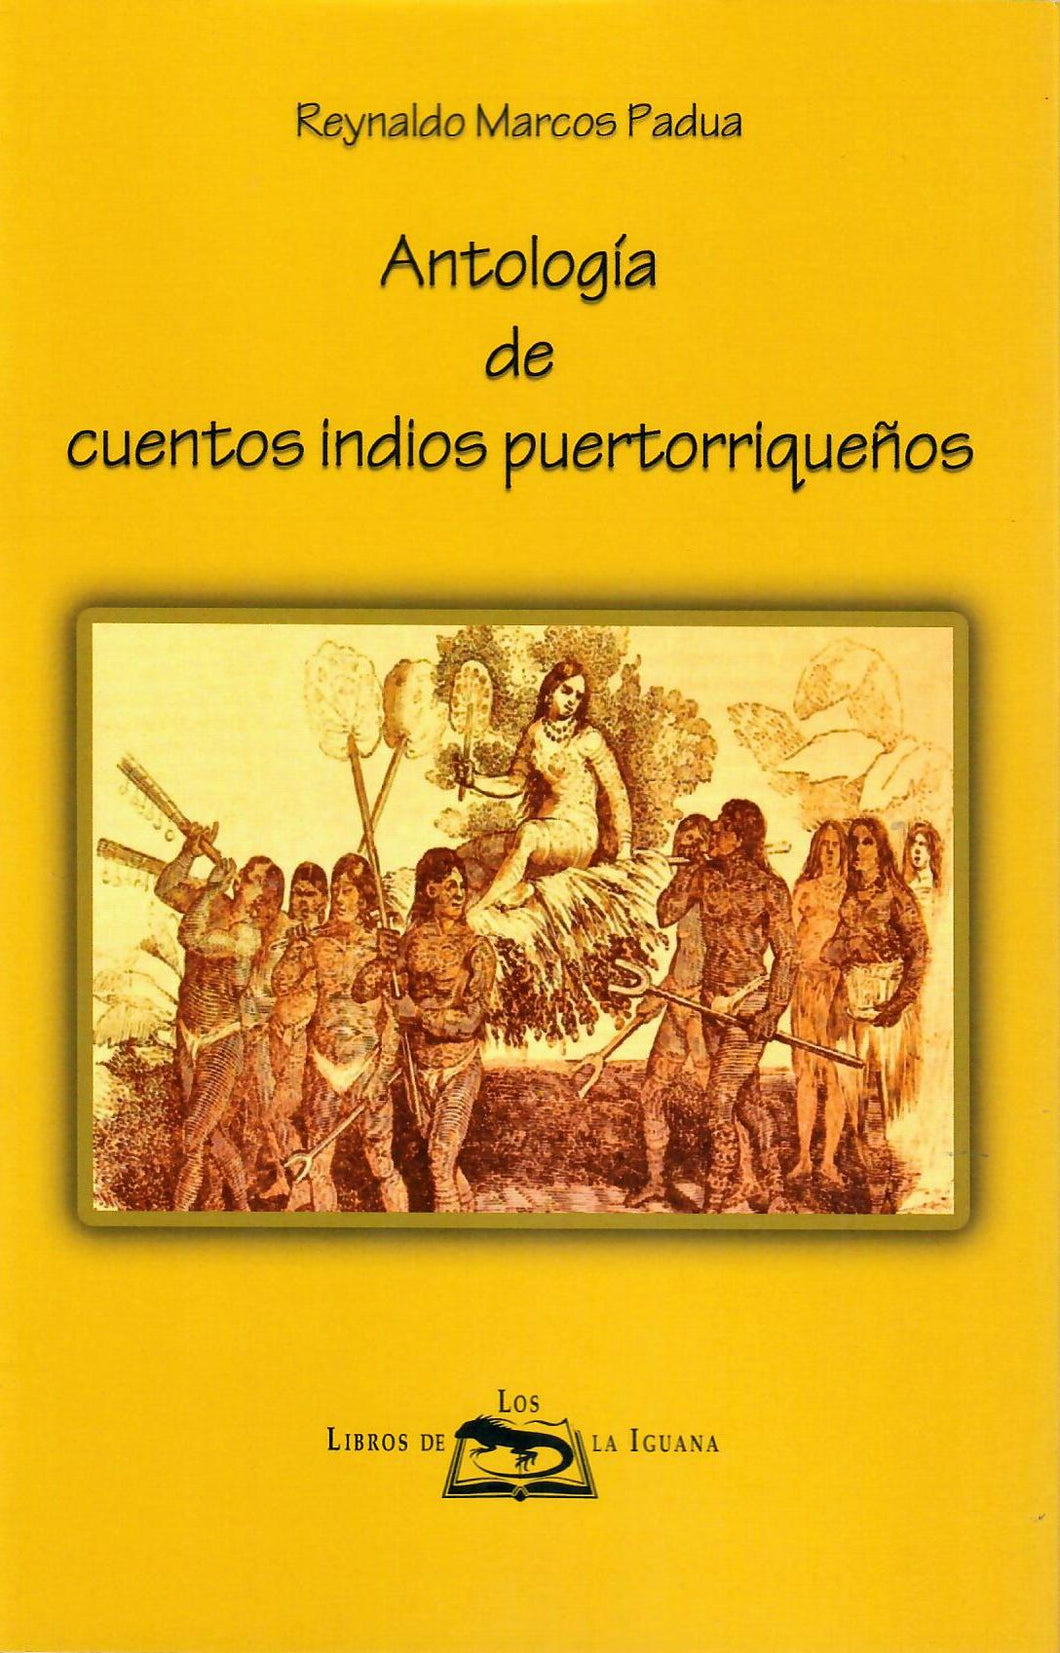 ANTOLOGÍA DE CUENTOS INDIOS PUERTORRIQUEÑOS - Reynaldo Marcos Padua